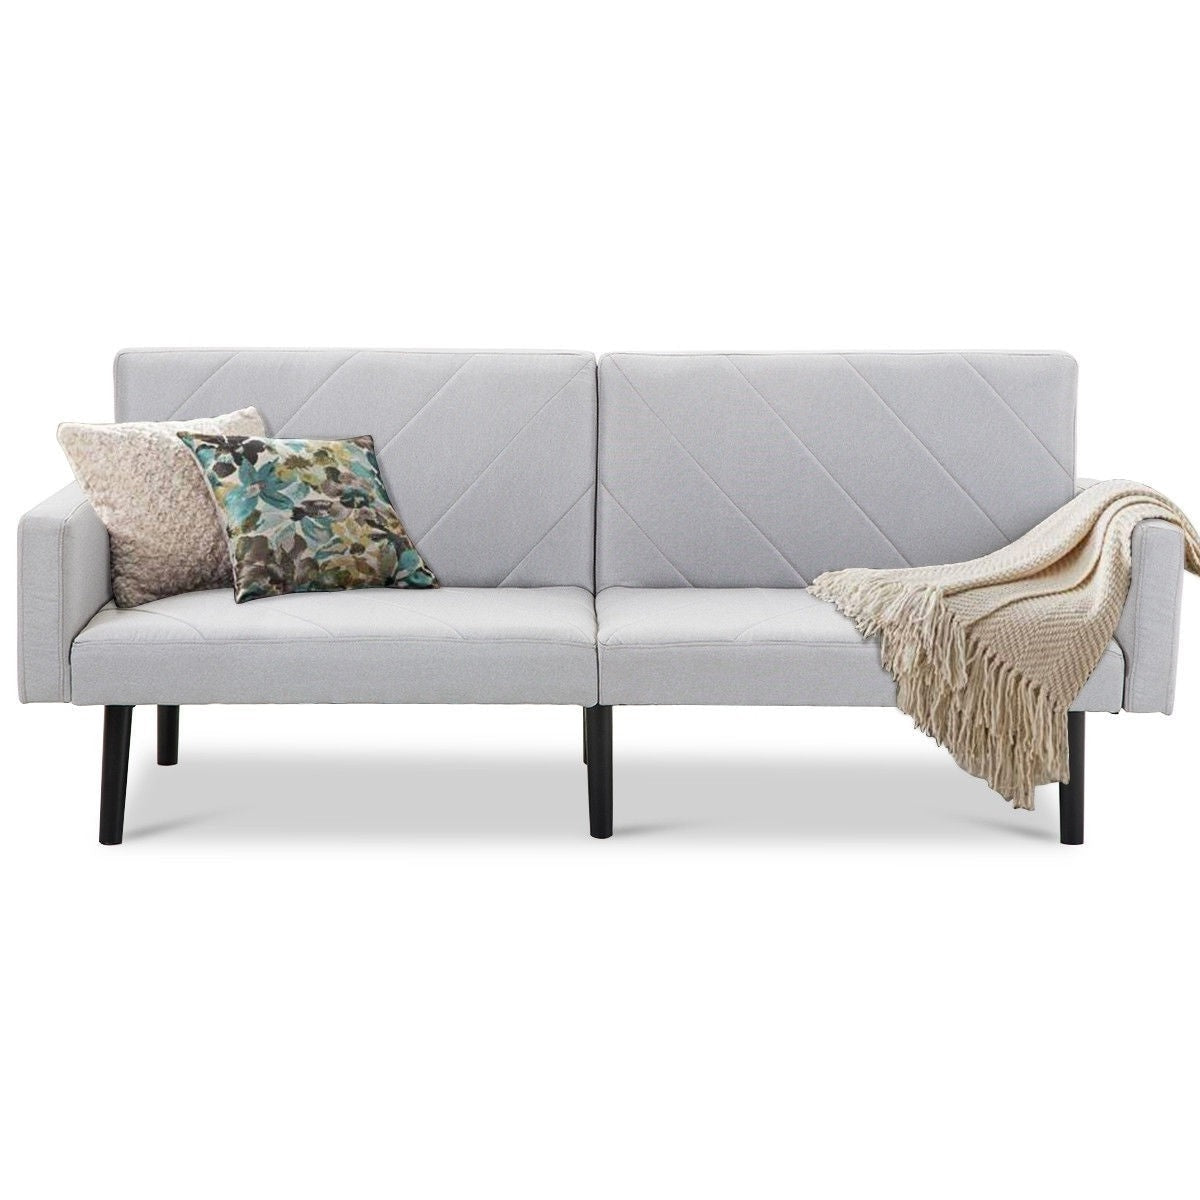 Living Room > Sofas - Modern Gray Linen Split-Back Futon Sofa Bed Couch